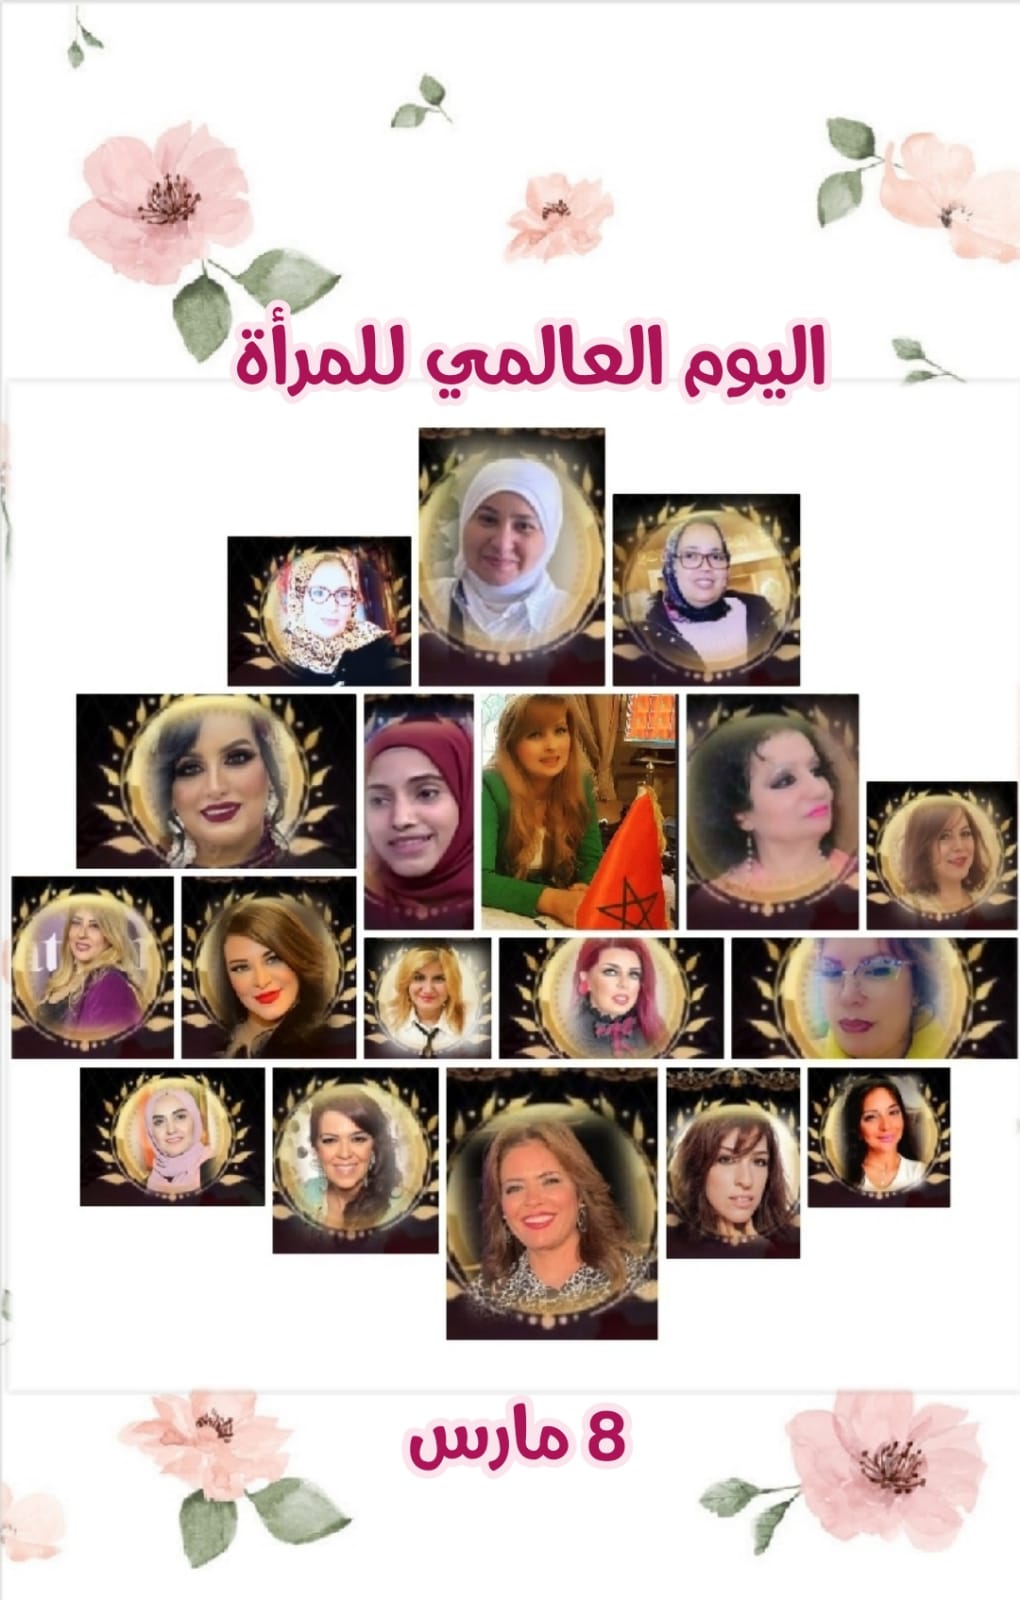 فى اليوم العالمى للمرأة:مكتب رابطة كاتبات المغرب فى مصر يحتفى  بالمبدعات العربيات العربيات